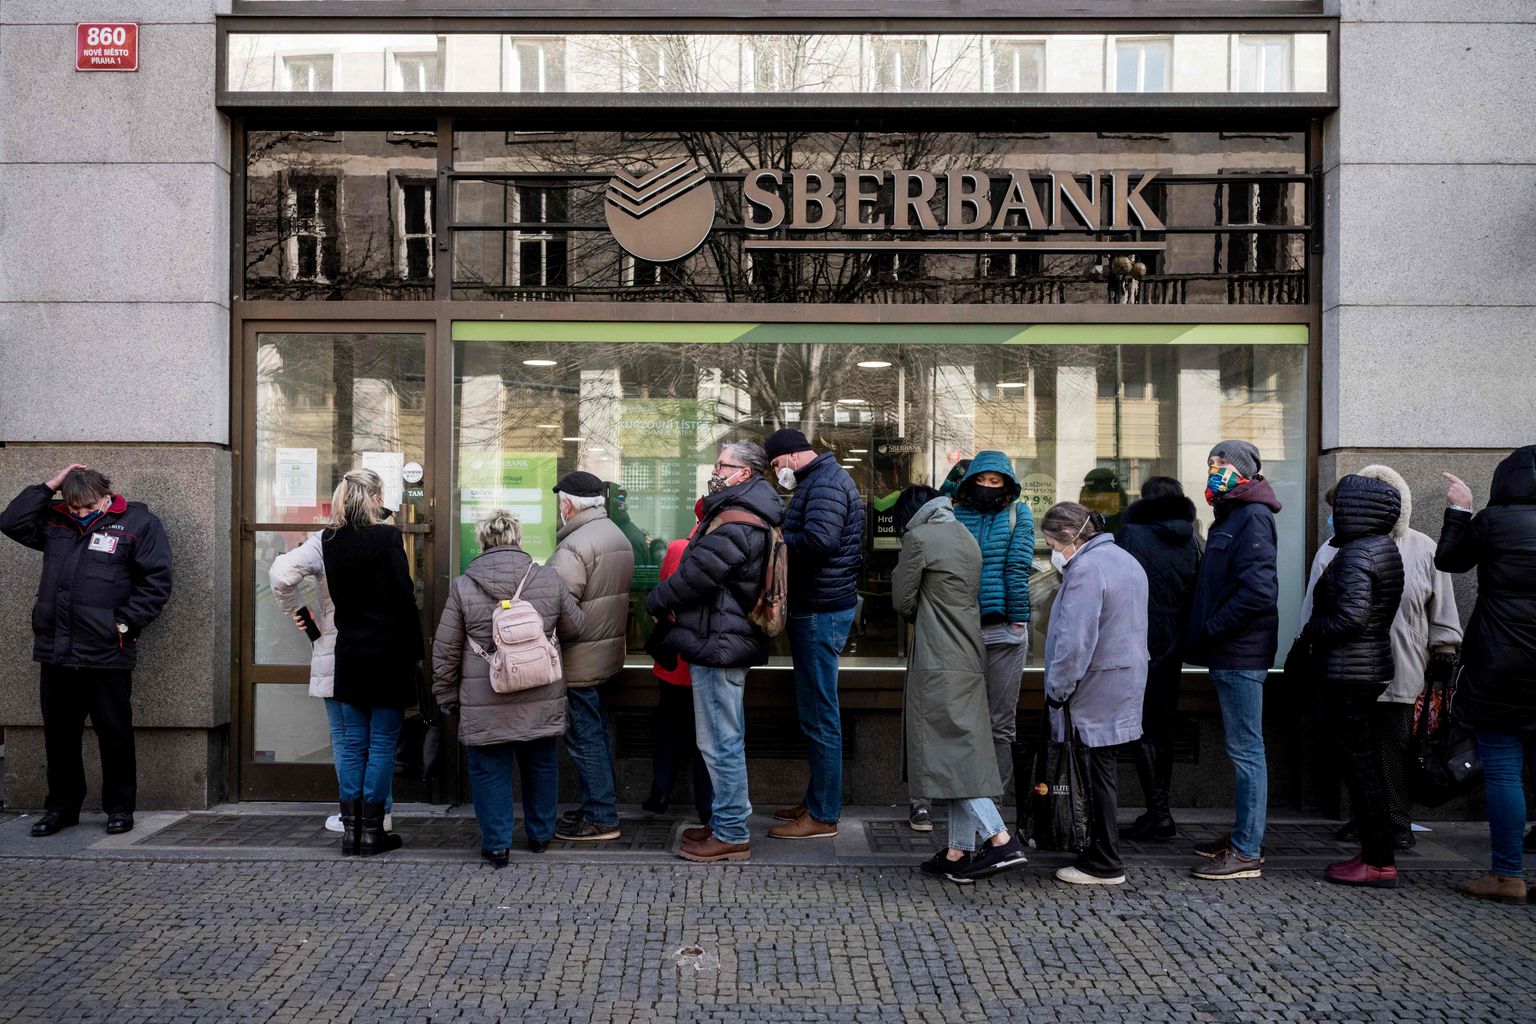 Vene riigile kuuluval Sberbanki aktsia kukkus Londoni börsil eile ligi 70%. Halba aimanud tšehhid tormasid Sberbanki Tšehhi filaalist raha välja võtma juba eelmisel reedel.